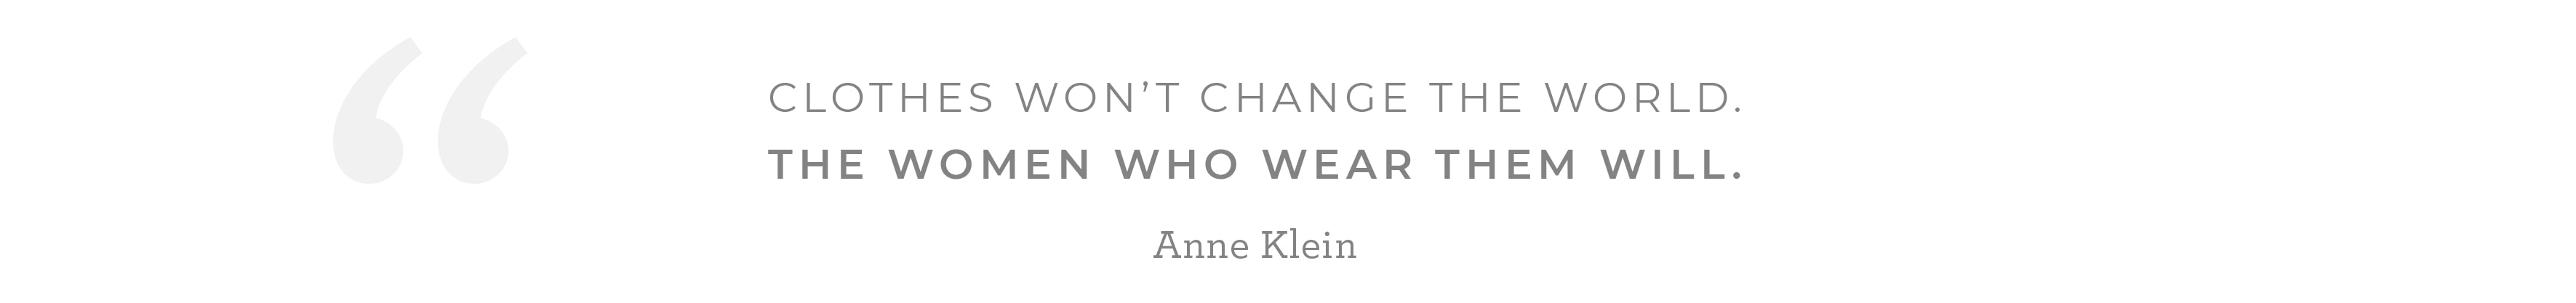 La ropa no va a cambiar al mundo pero las mujeres que la usan Si. ANNE KLEIN